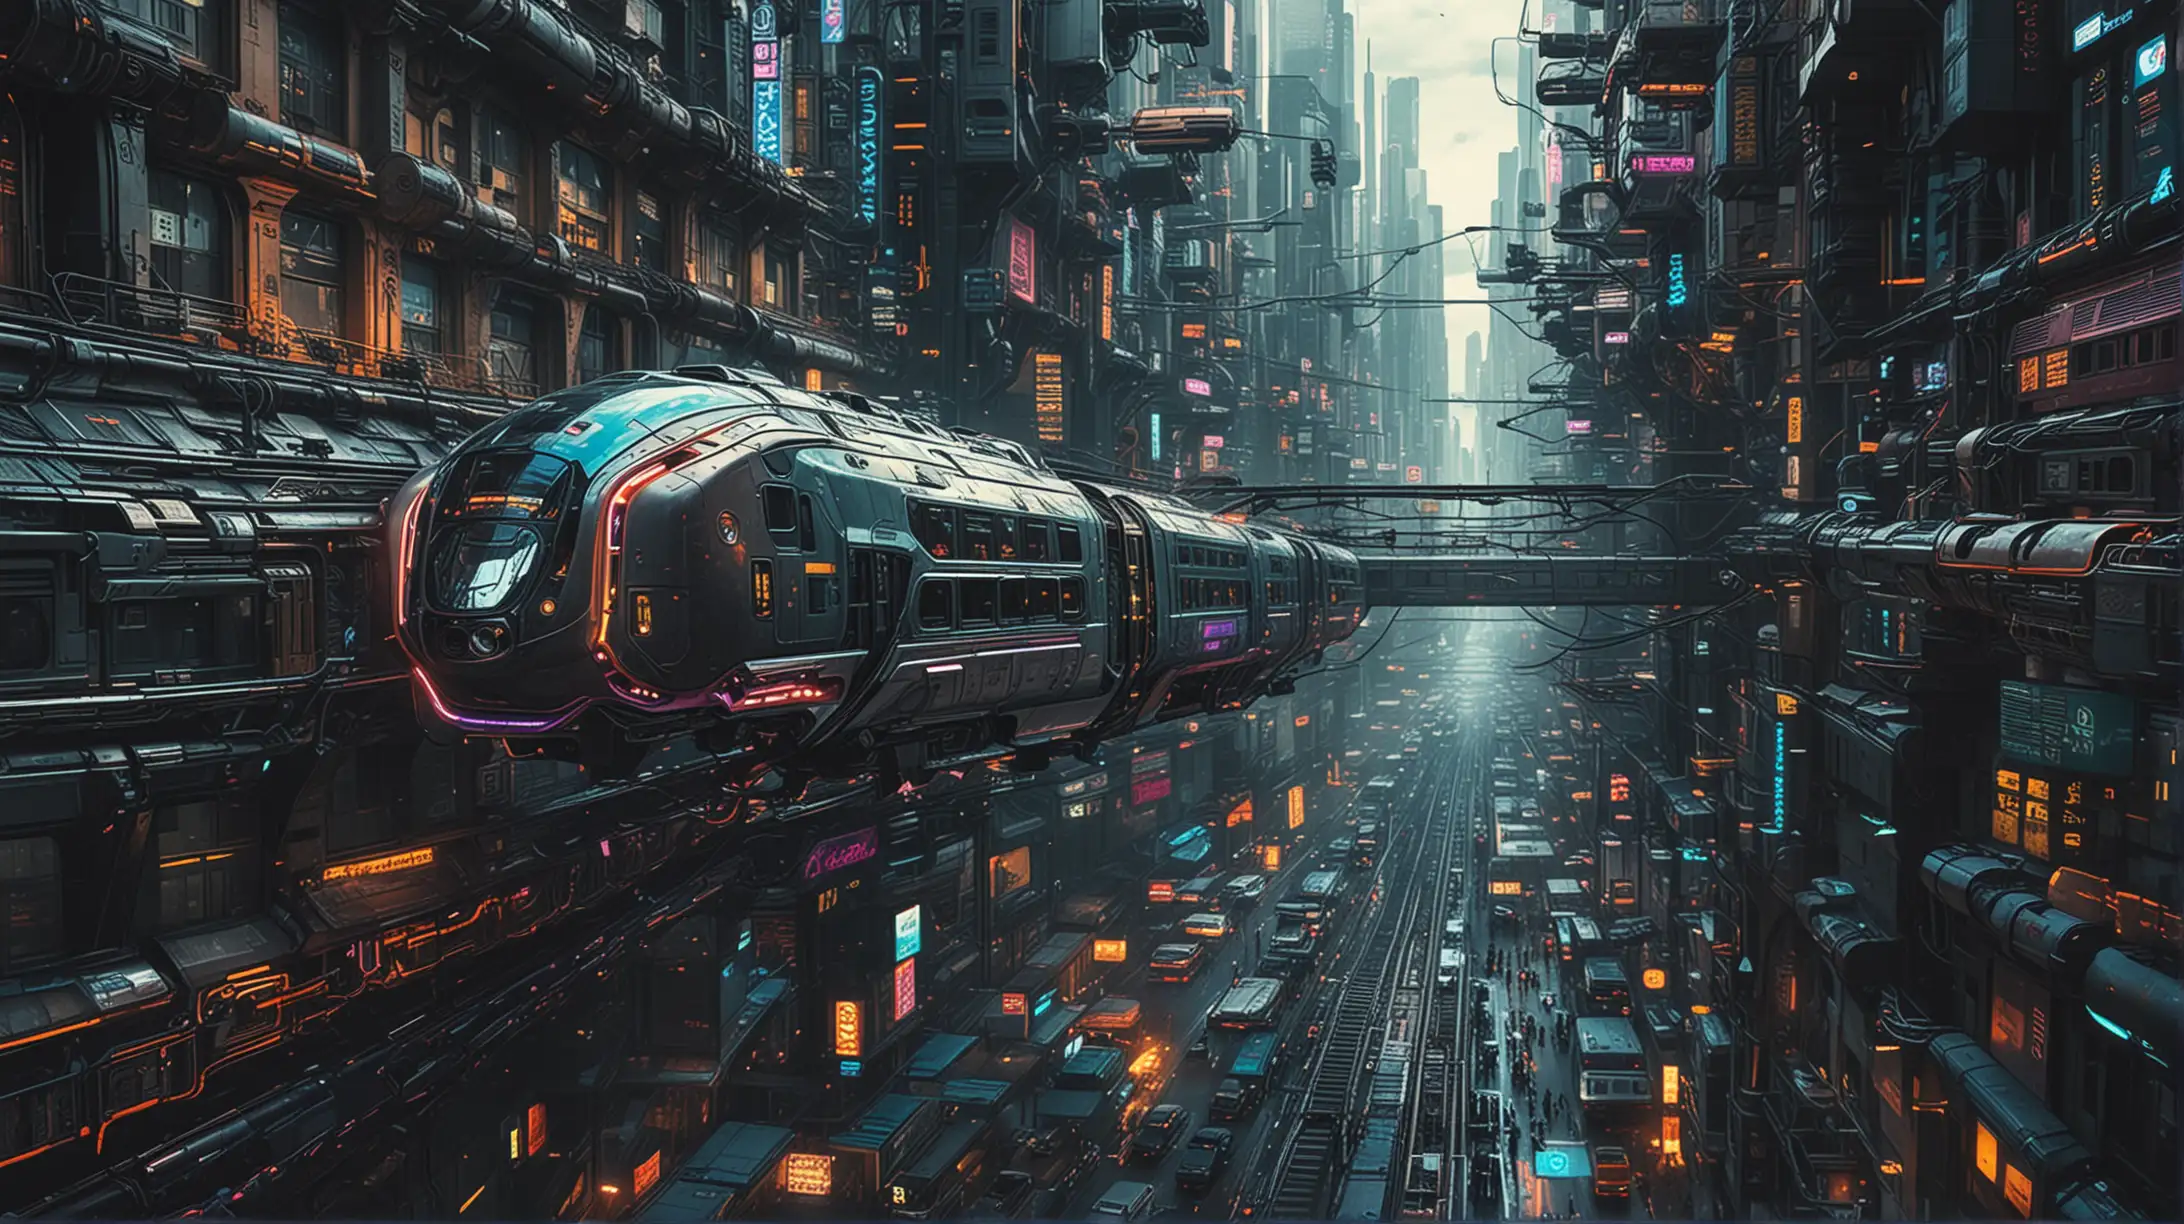 Futuristic Overhead Train in Cyberpunk Cityscape